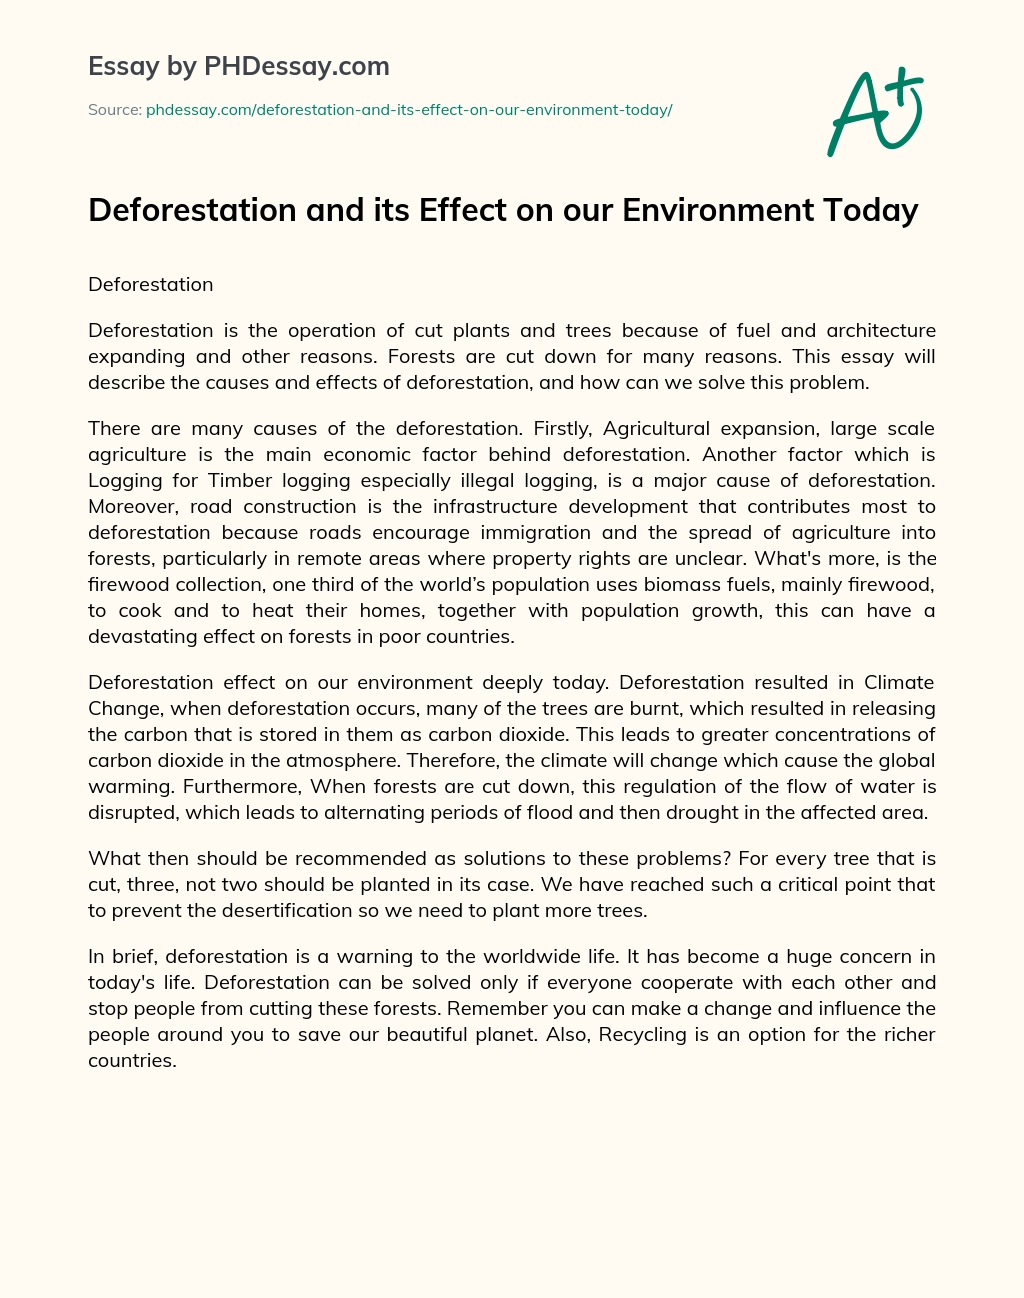 solution for deforestation essay